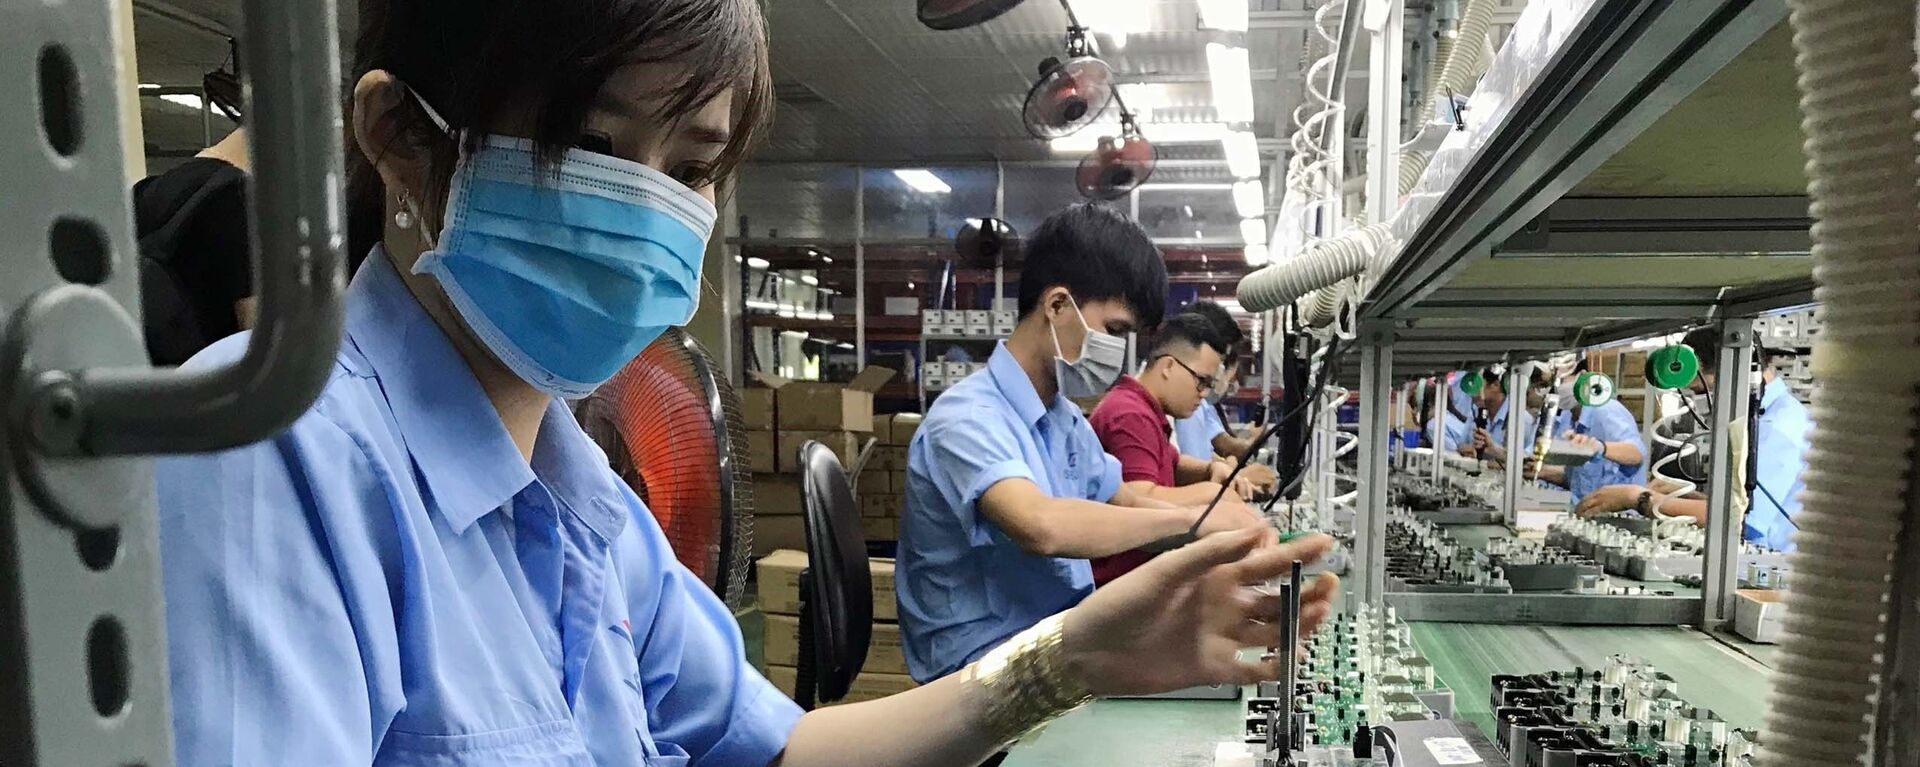 Dây chuyền sản xuất các thiết bị điện, điện tử tại Công ty cổ phần Thiết bị điện VI-NA-SI-No (VSEE JSC) tại khu công nghiệp Long Hậu (Long An).  - Sputnik Việt Nam, 1920, 11.07.2019